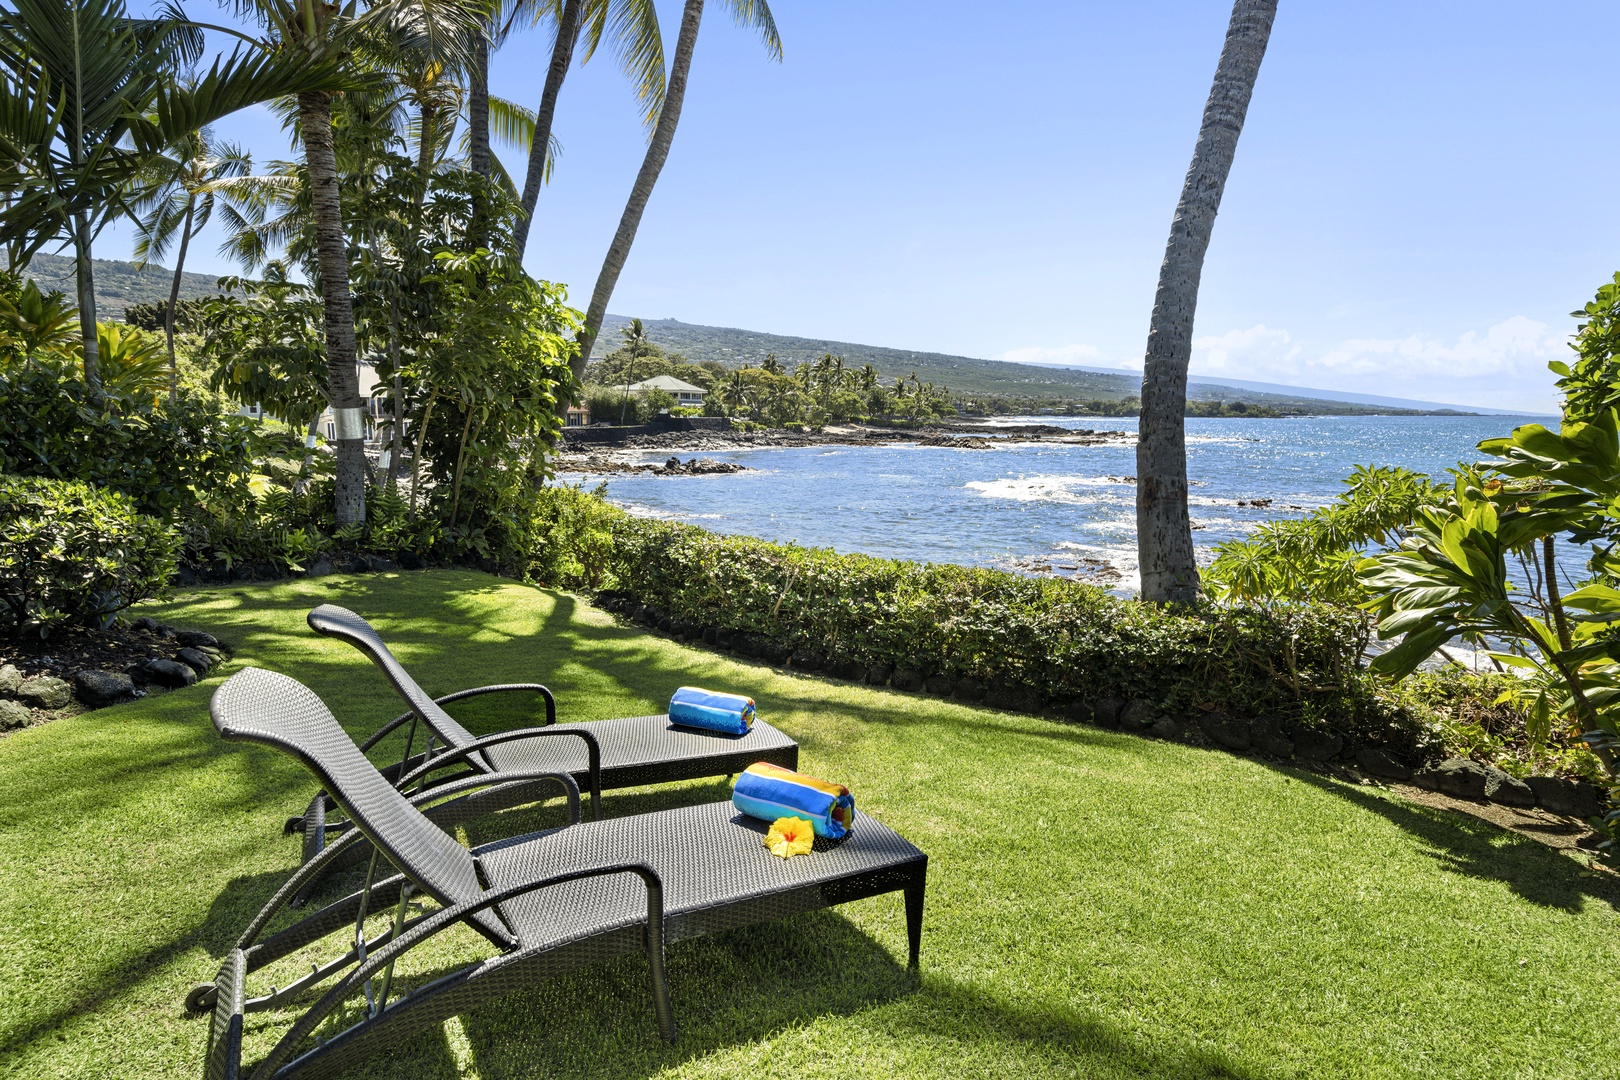 Kailua Kona Vacation Rentals, Ali'i Point #7 - Lounge time!